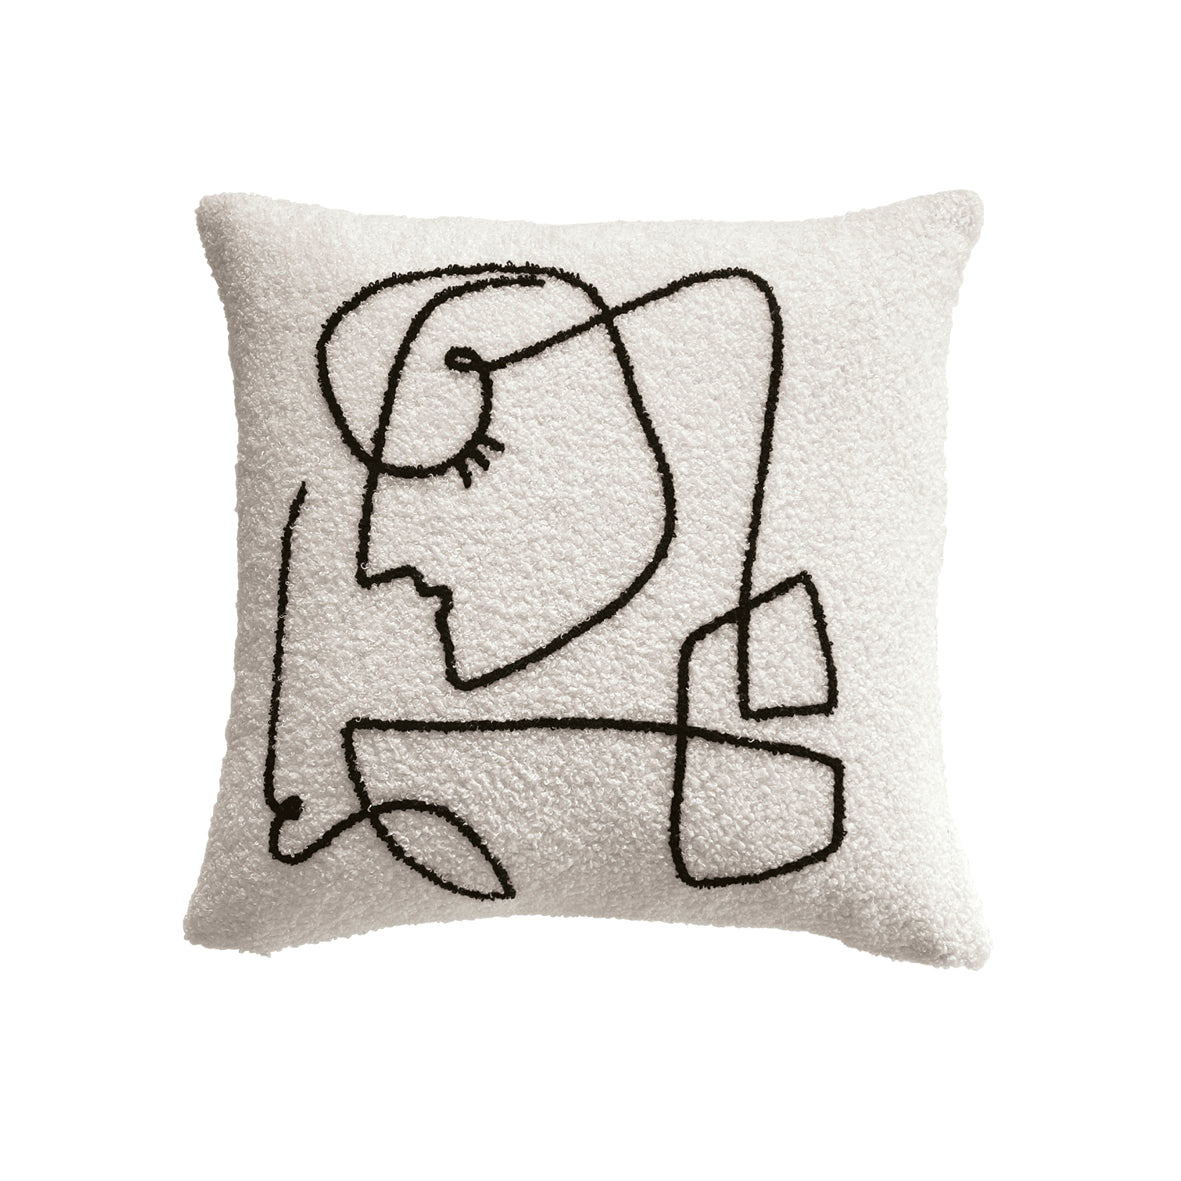 Cushion cover Lya White / Black - 43 x 43 cm